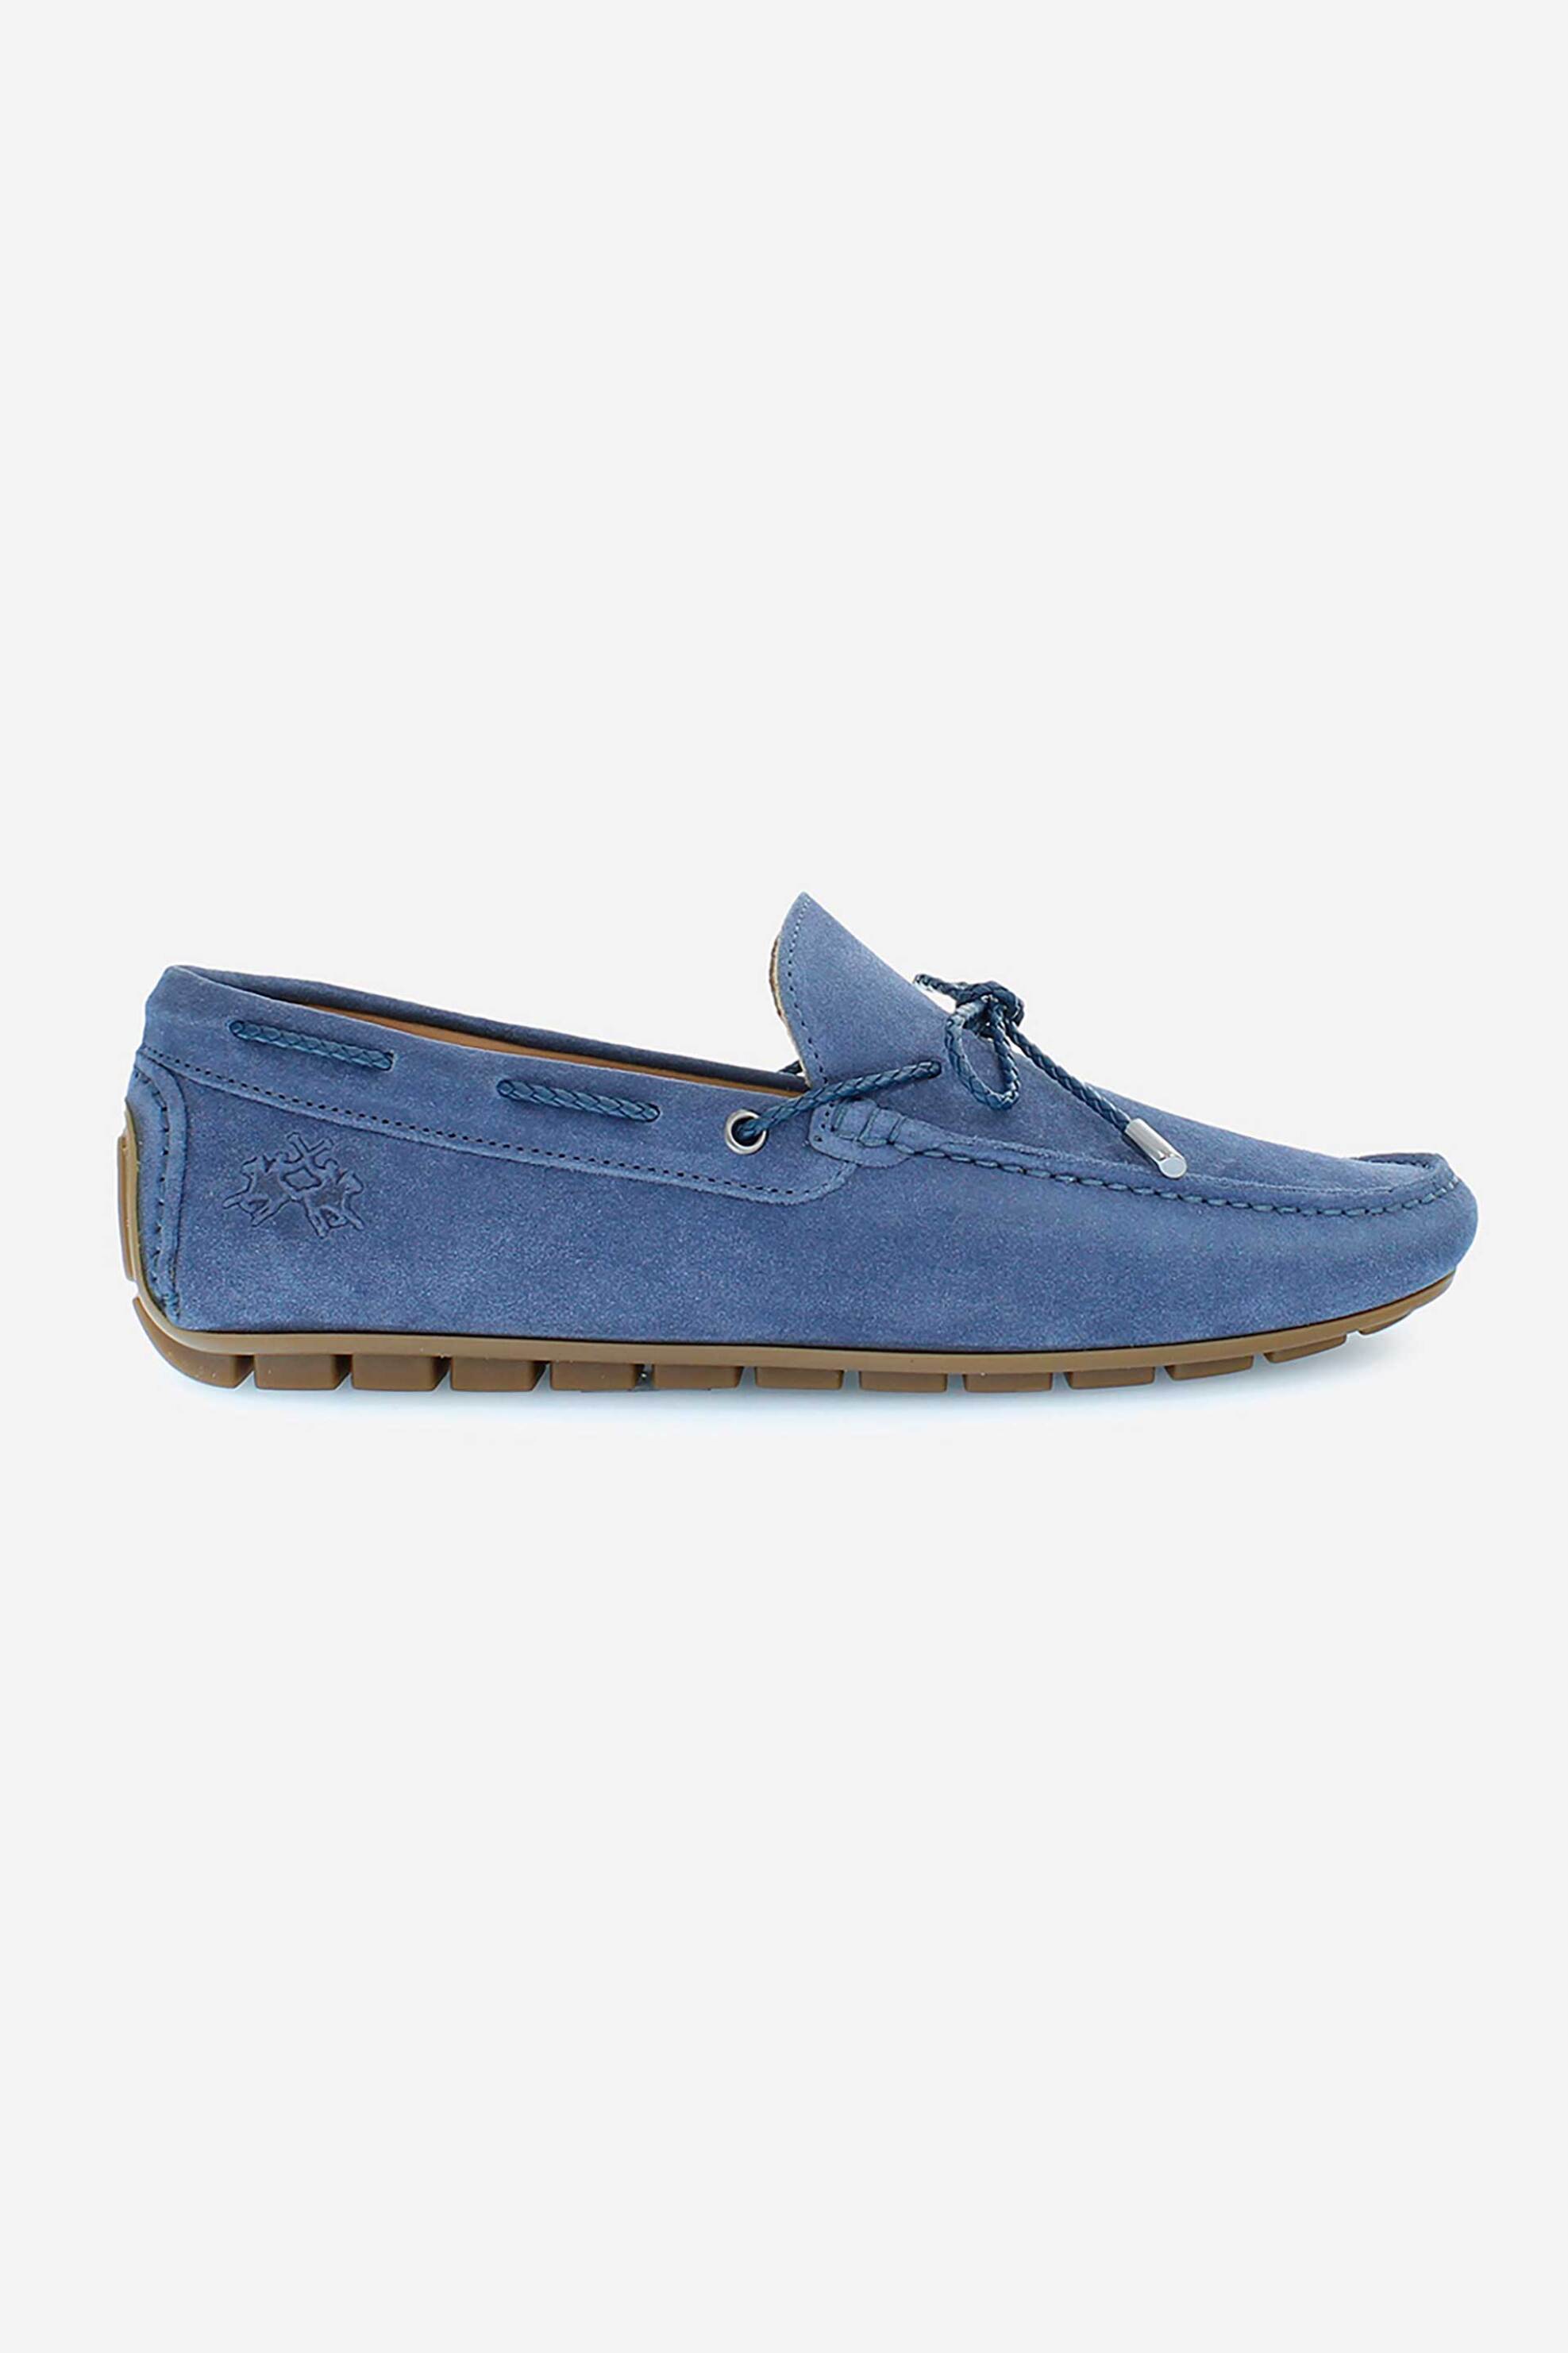 Ανδρική Μόδα > Ανδρικά Παπούτσια > Ανδρικά Boat Shoes La Martina ανδρικά boat παπούτσια από δέρμα καστόρι μονόχρωμα με ανάγλυφο έμβλημα - LFM241092-3230 Μπλε